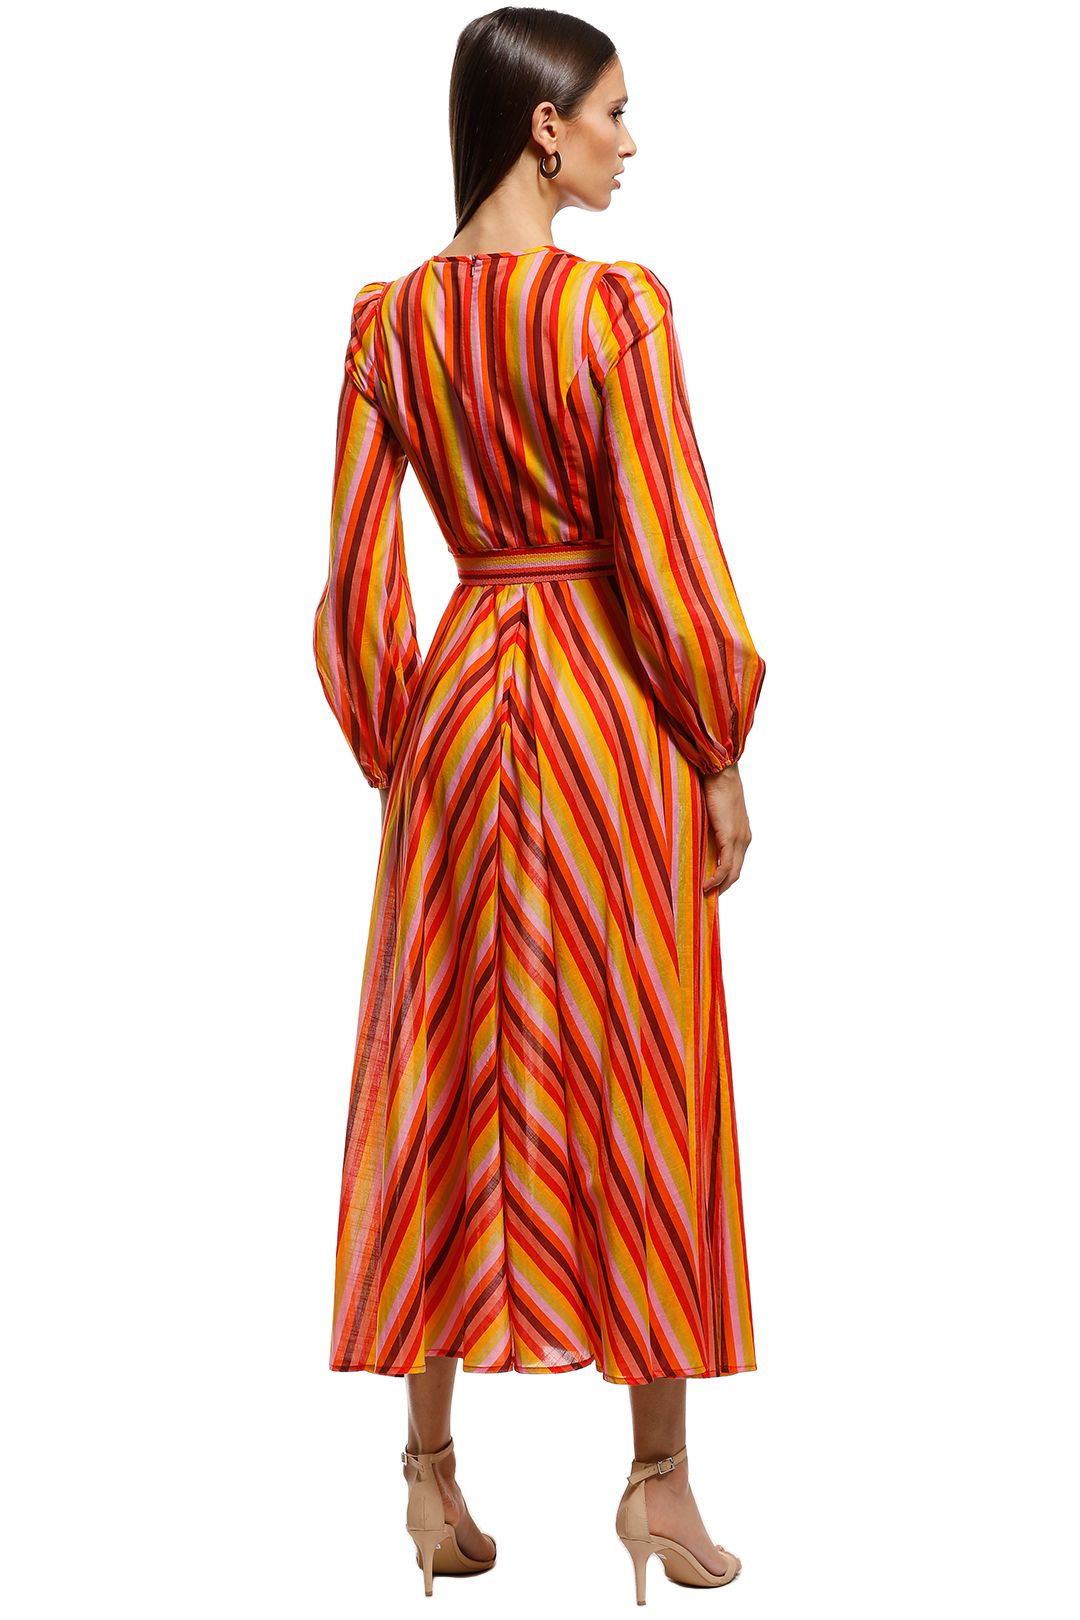 Zimmermann - Goldie Plunge Dress - Orange - Back